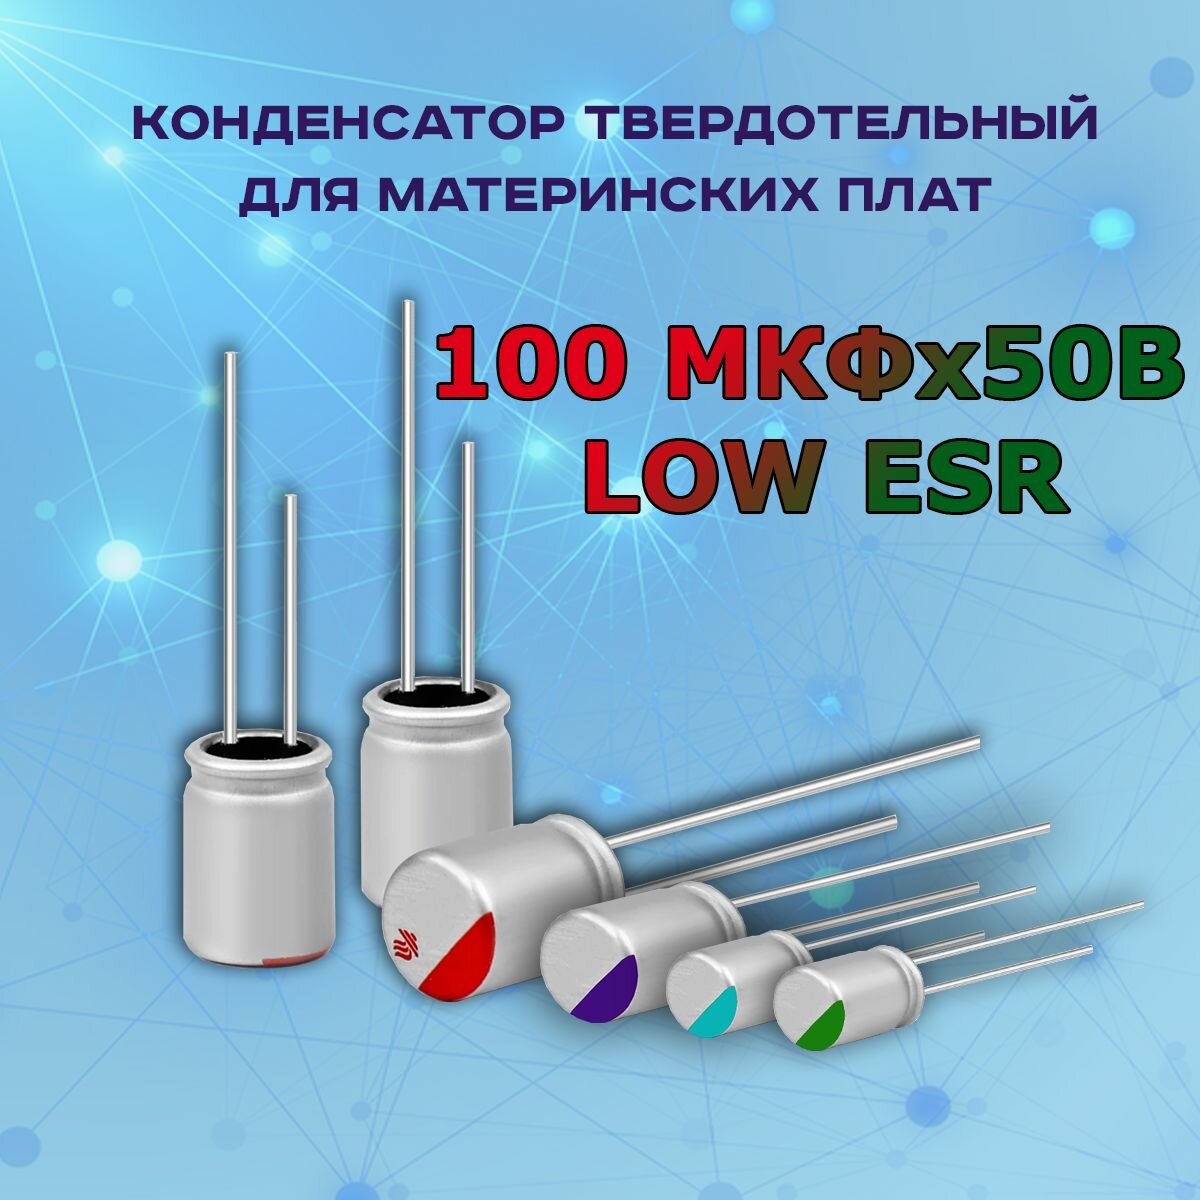 Конденсатор для материнской платы твердотельный 100 микрофарат 50 Вольт 100 МКФх50В LOW ESR - 1 шт.